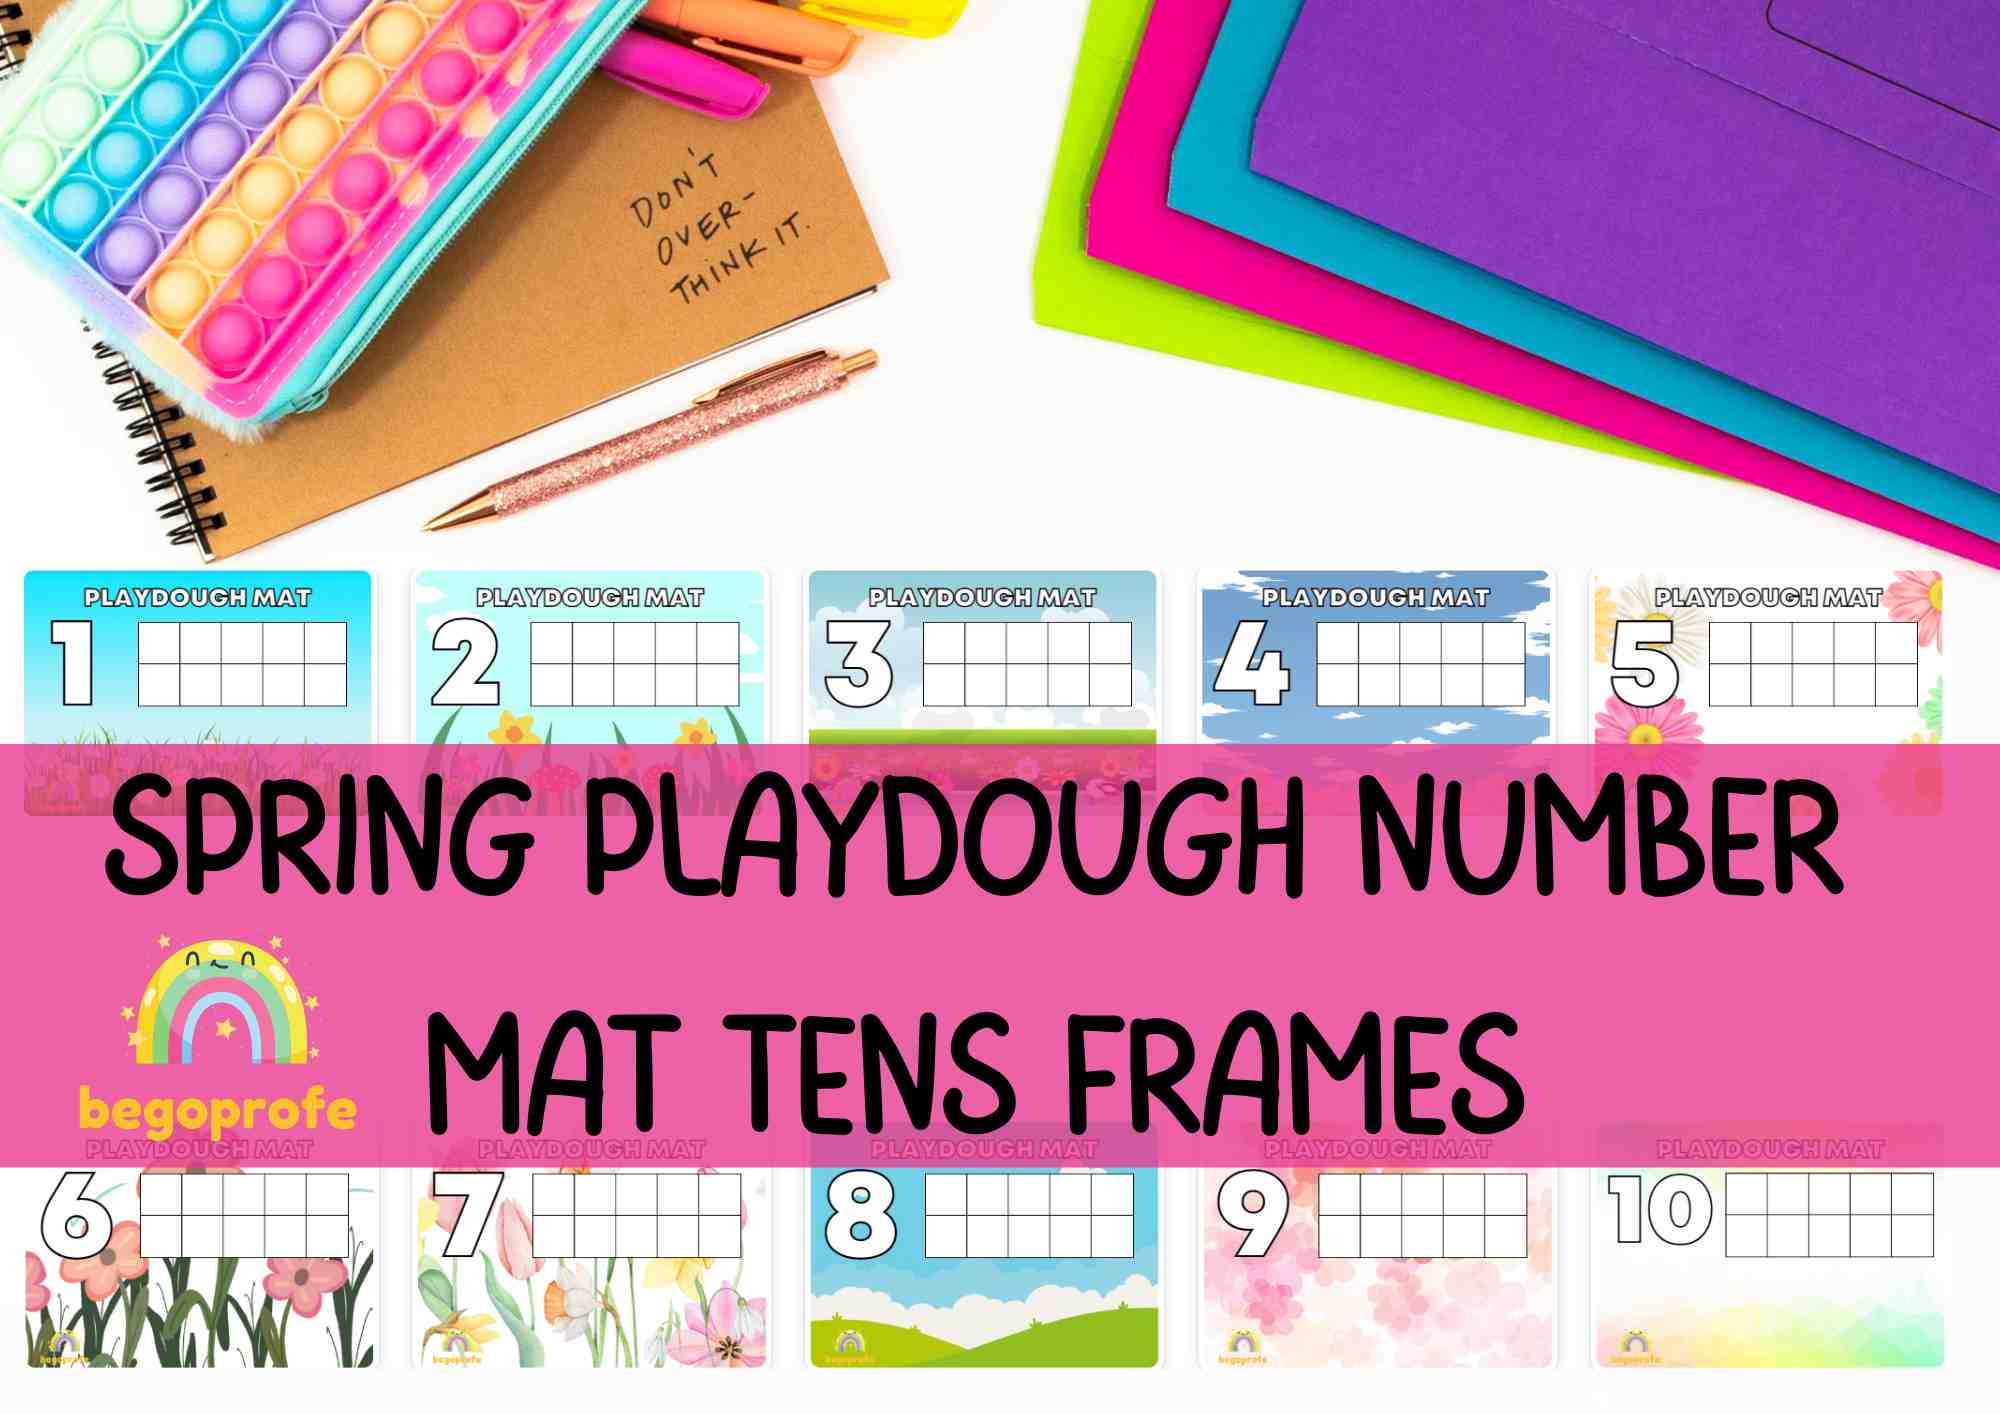 Spring Playdough Number Mat Tens Frames